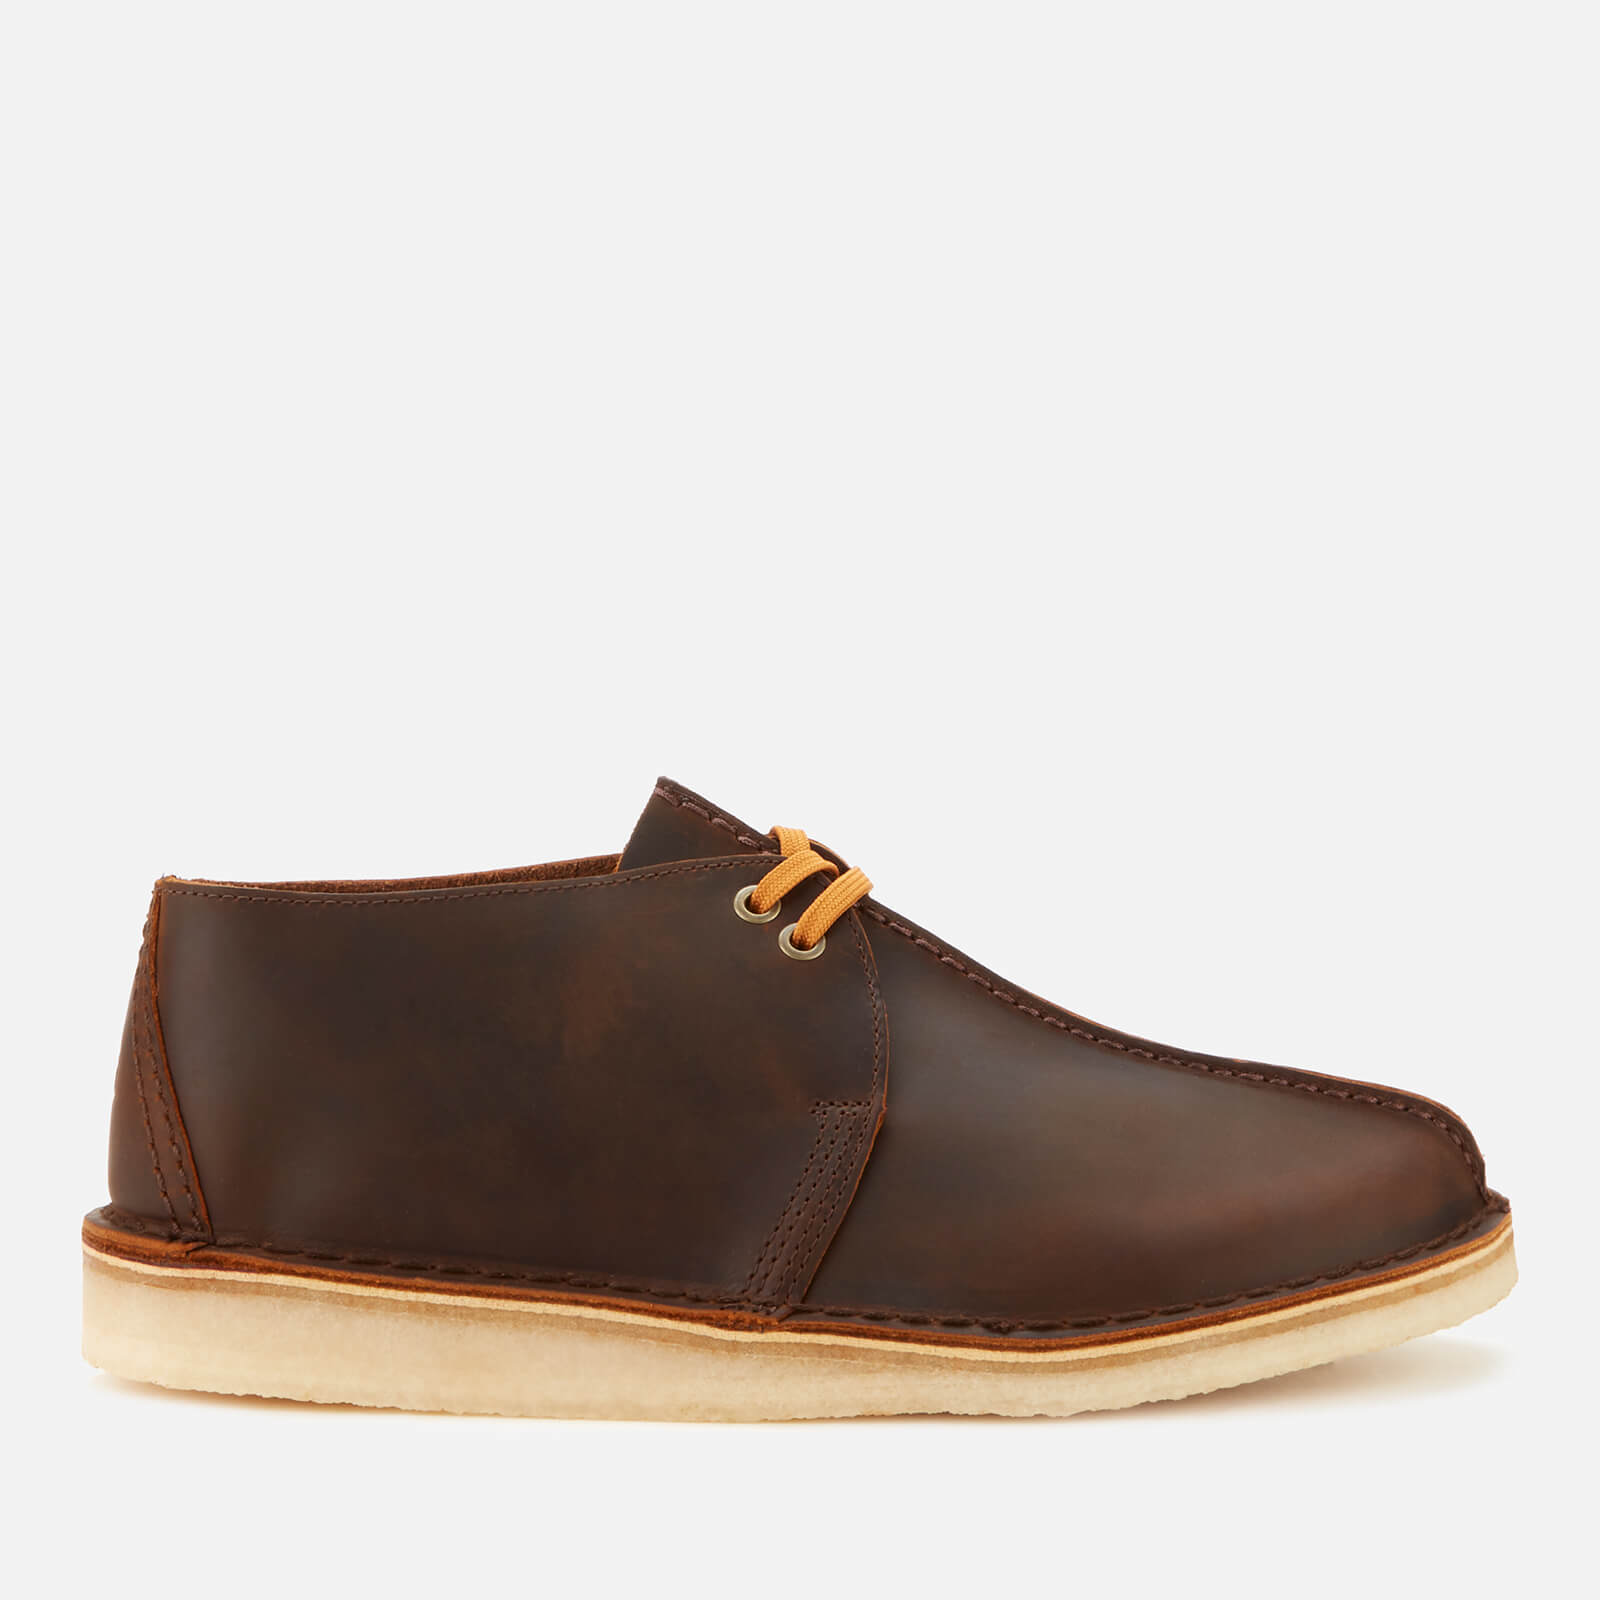 Clarks Originals Men’s Desert Trek Leather Shoes - Beeswax